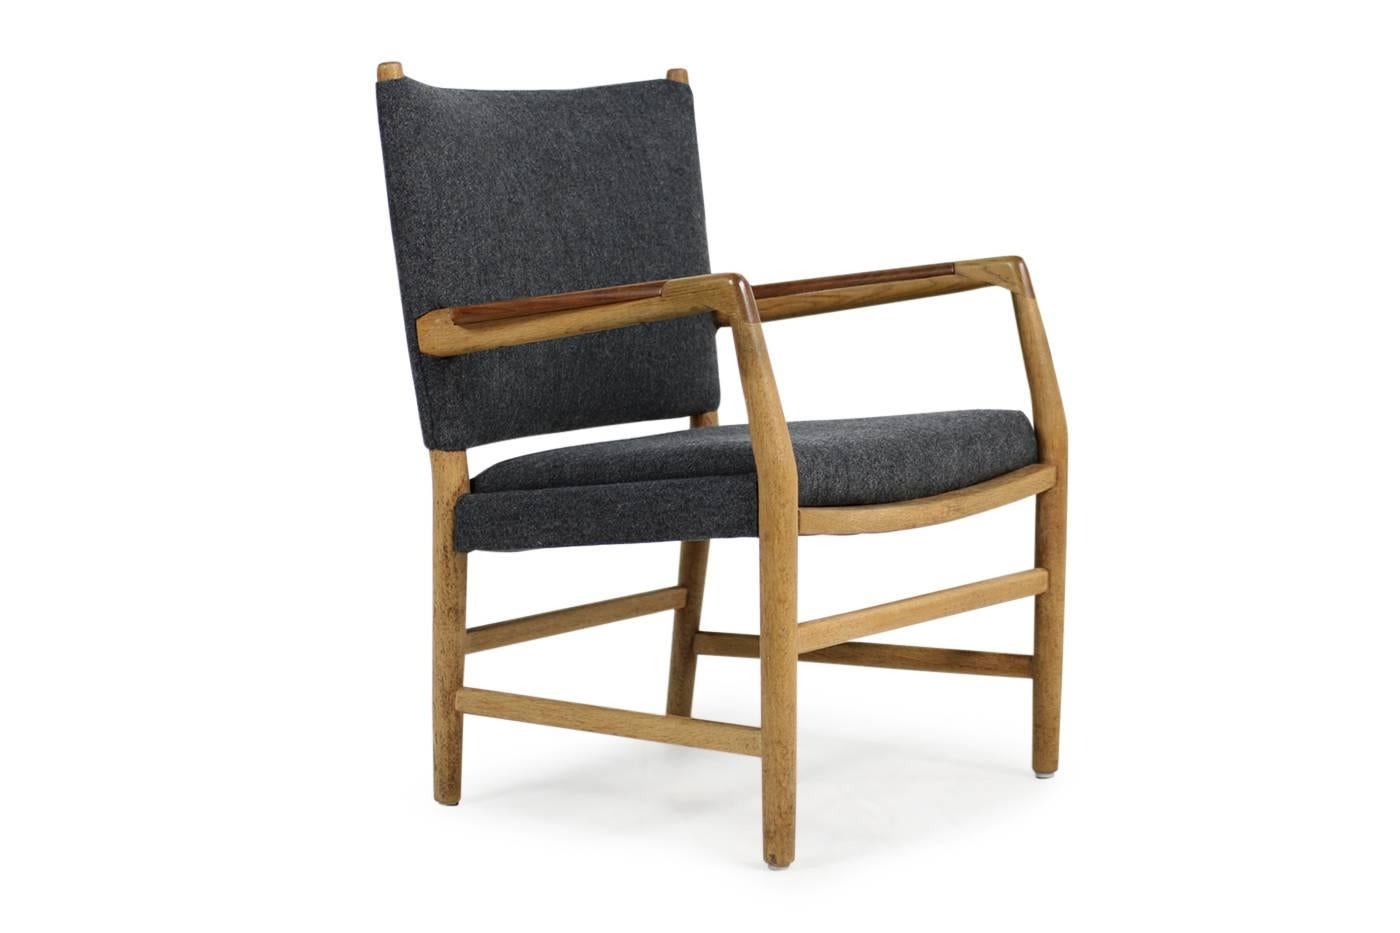 1950s Hans J. Wegner 'Town Hall' Chair Oak and Teak Mid-Century Modern Design (Dänisch)